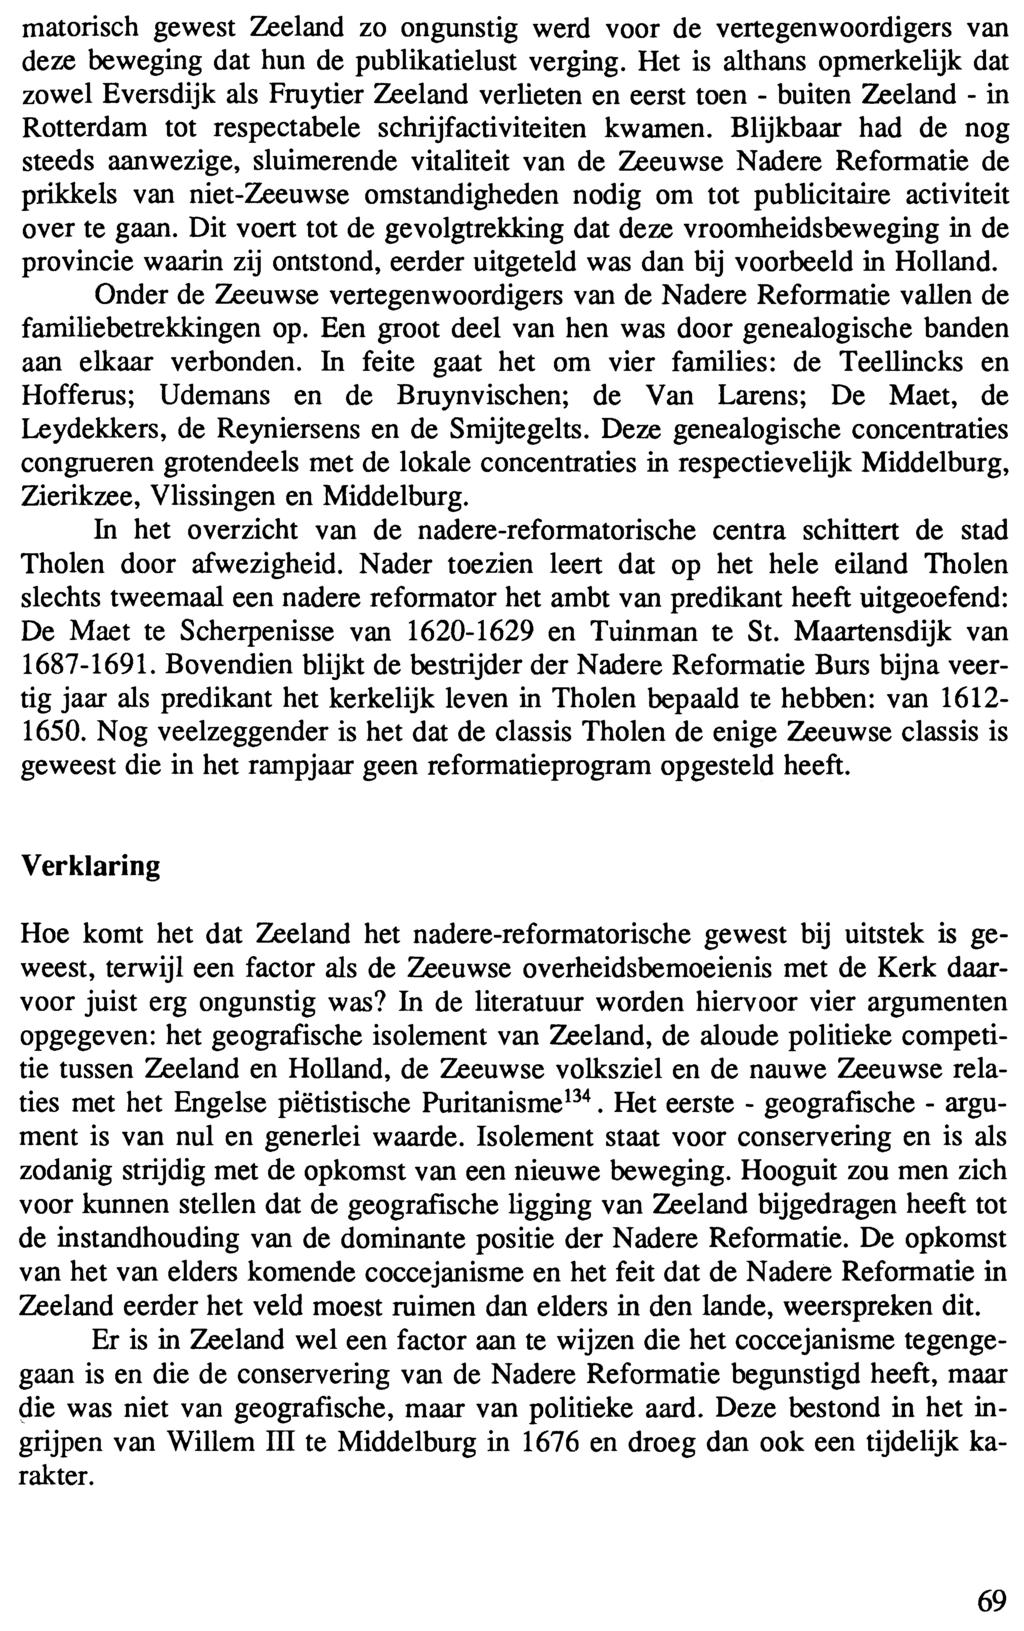 matorisch gewest Zeeland zo ongunstig werd voor de vertegenwoordigers van deze beweging dat hun de publikatielust verging.